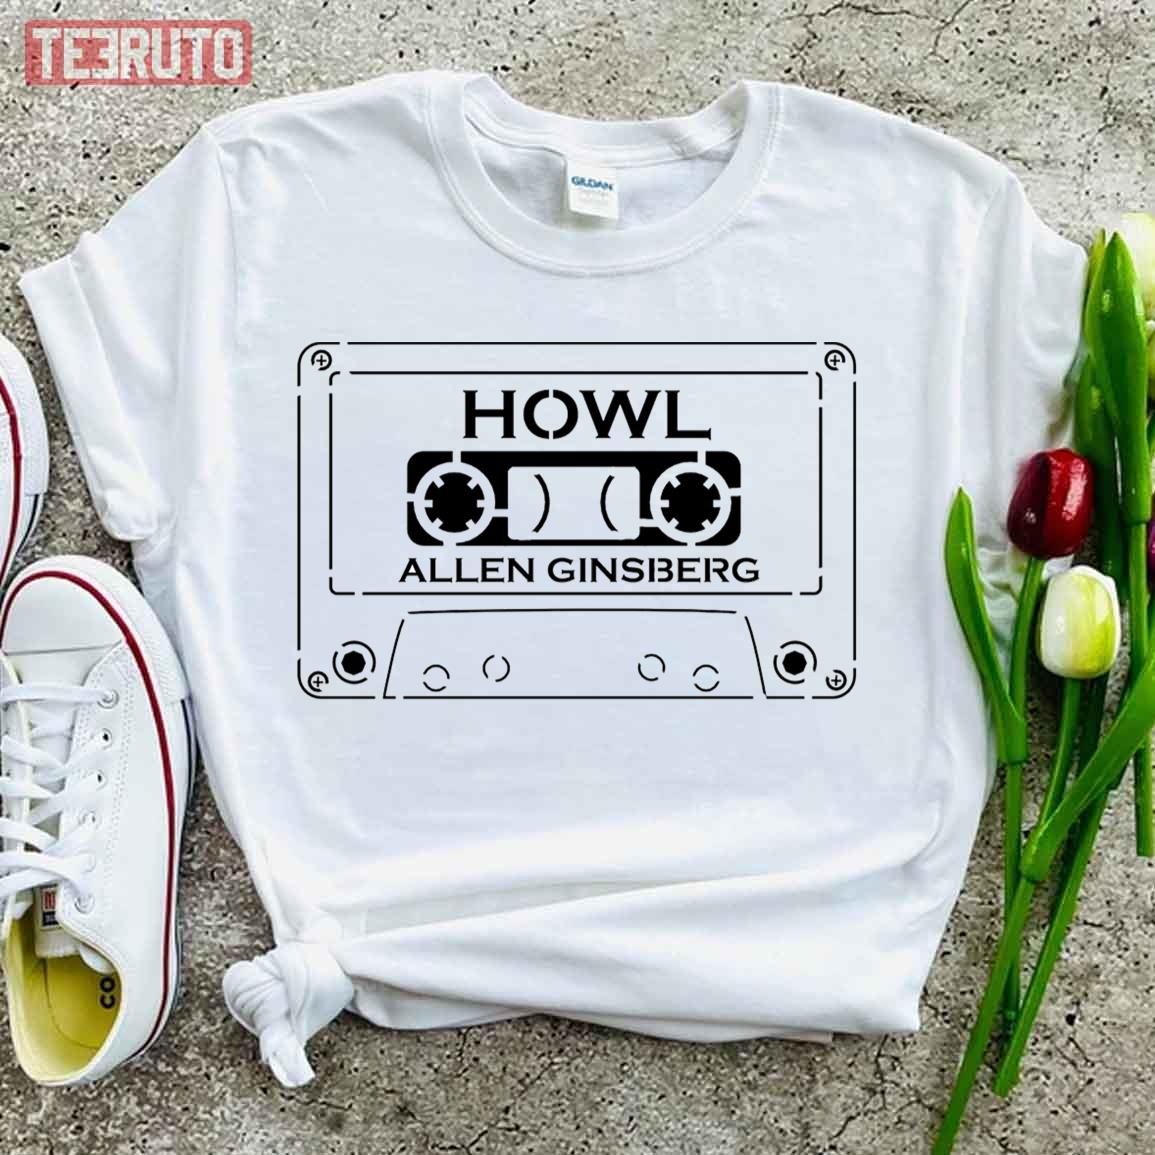 Howl C90 Allen Ginsberg Unisex T-Shirt